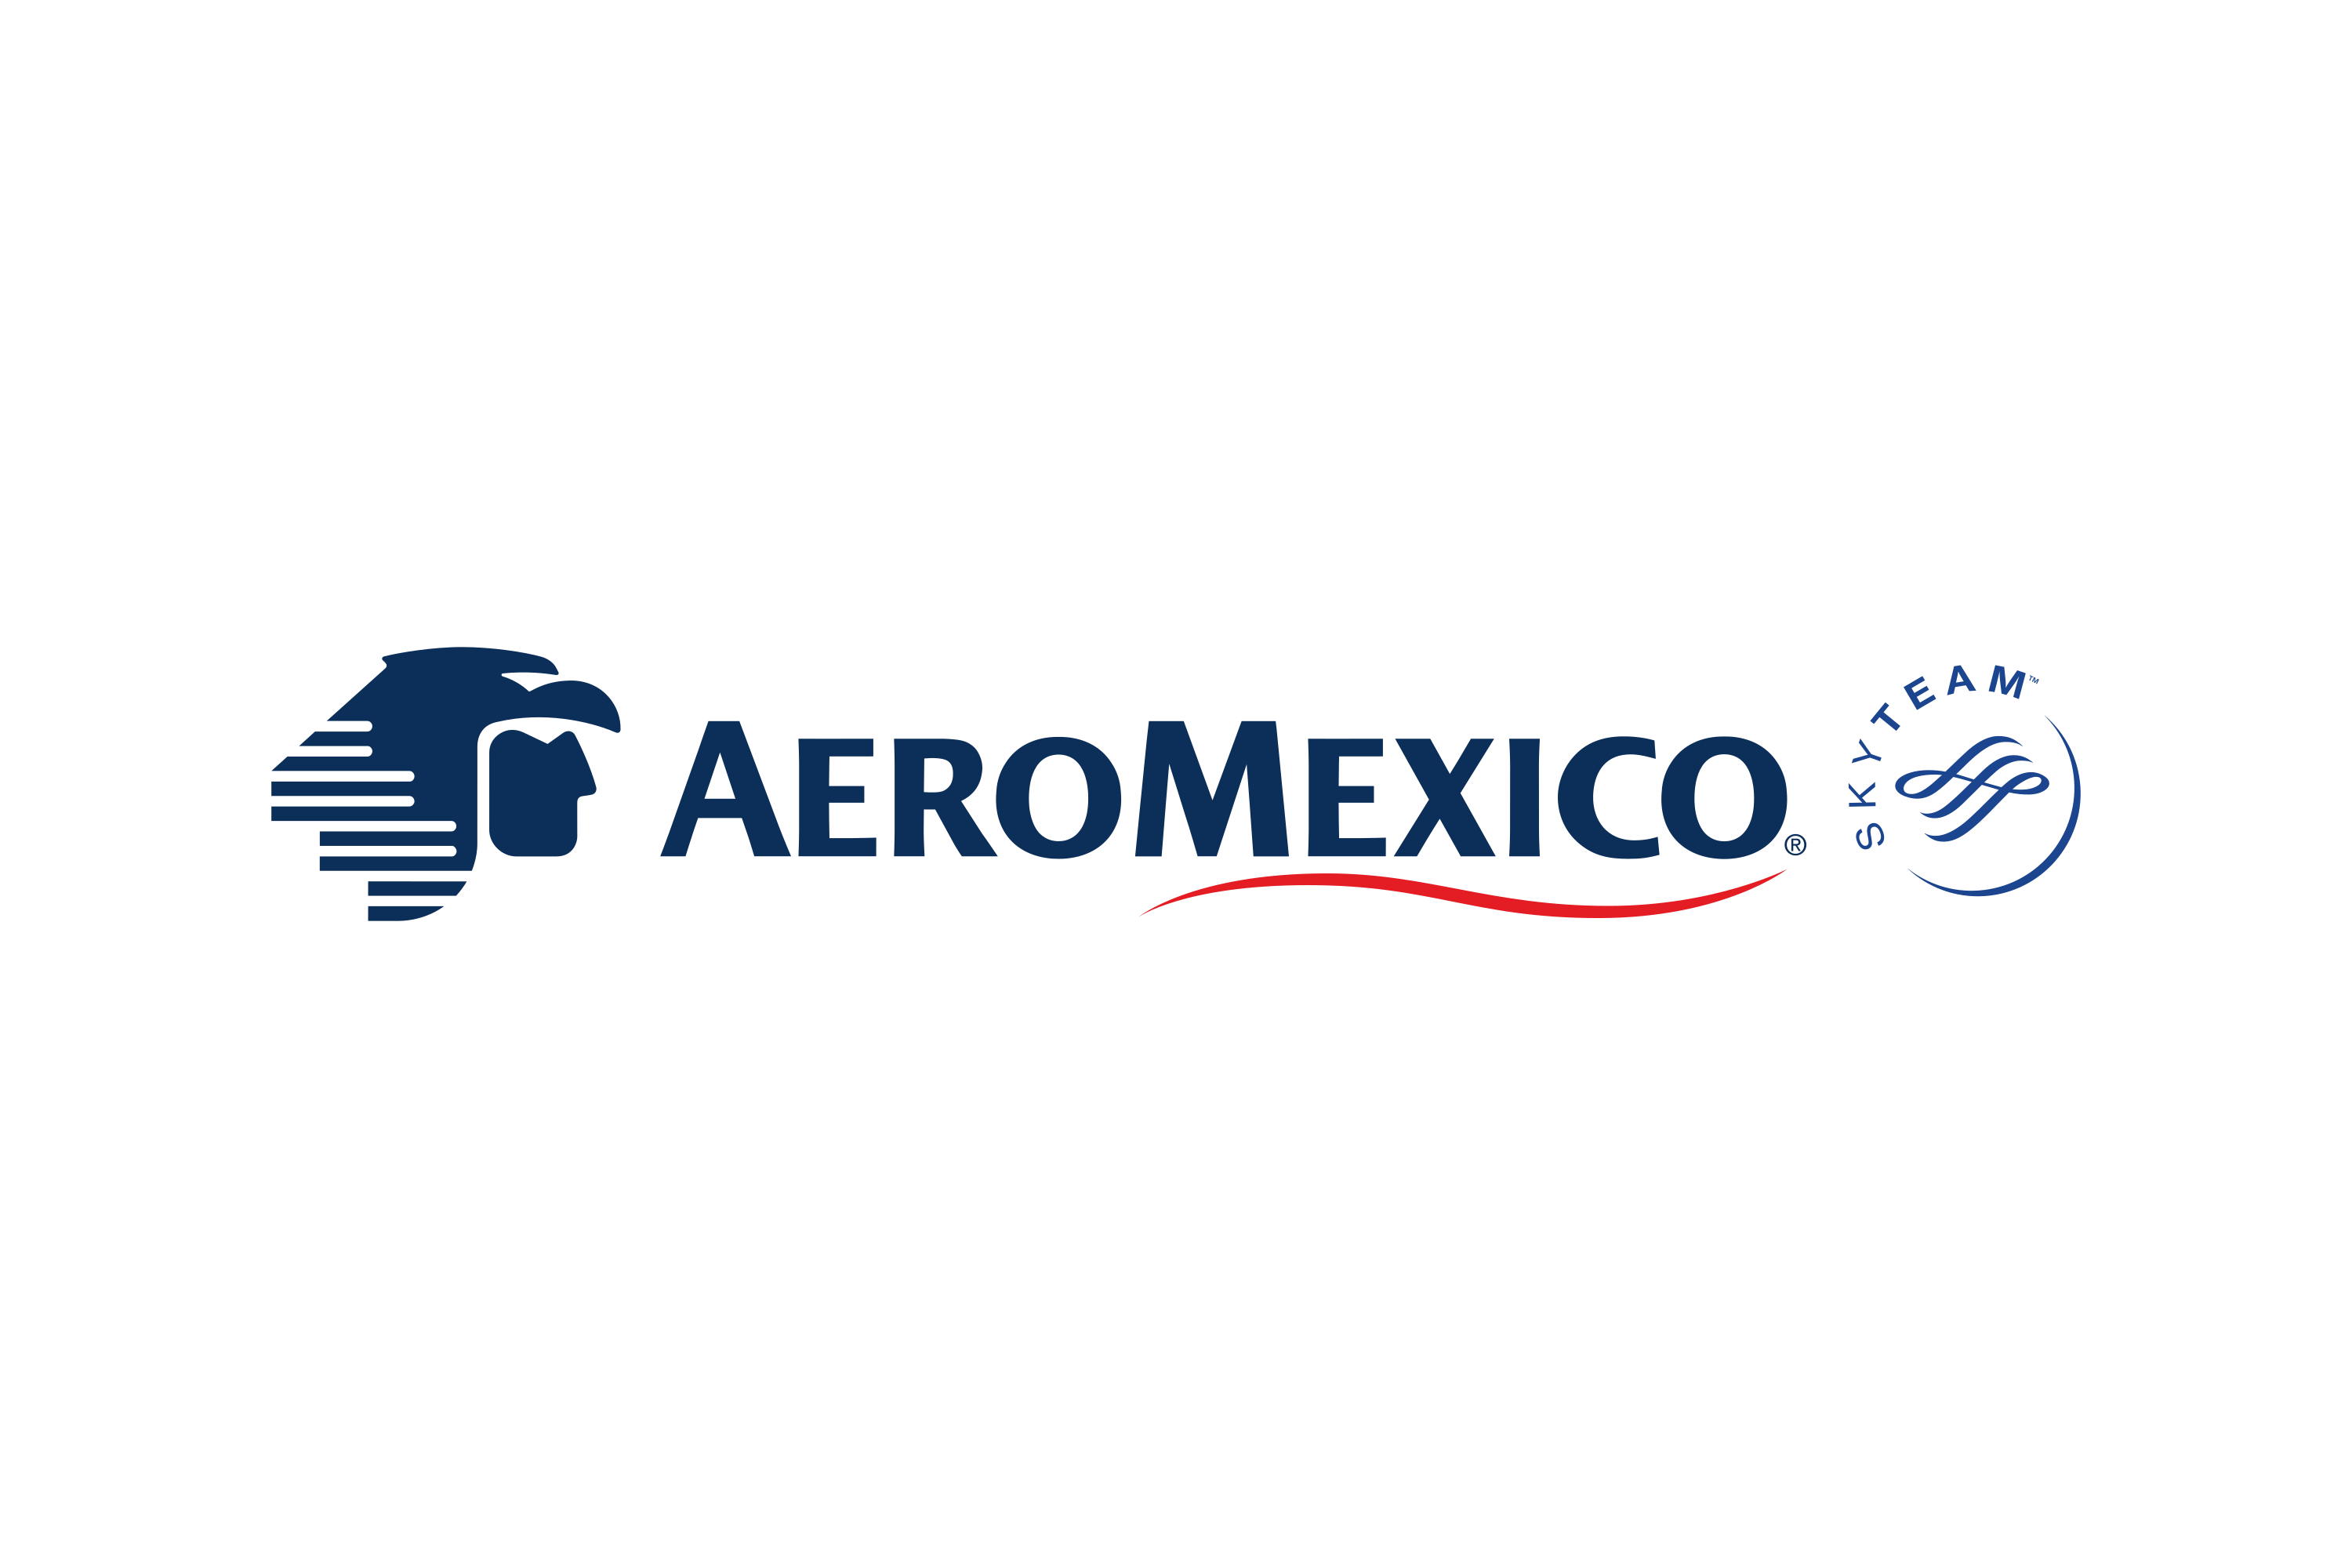 Download Aeroméxico (Aerovías de México, S.A. de C.V.) Logo in SVG